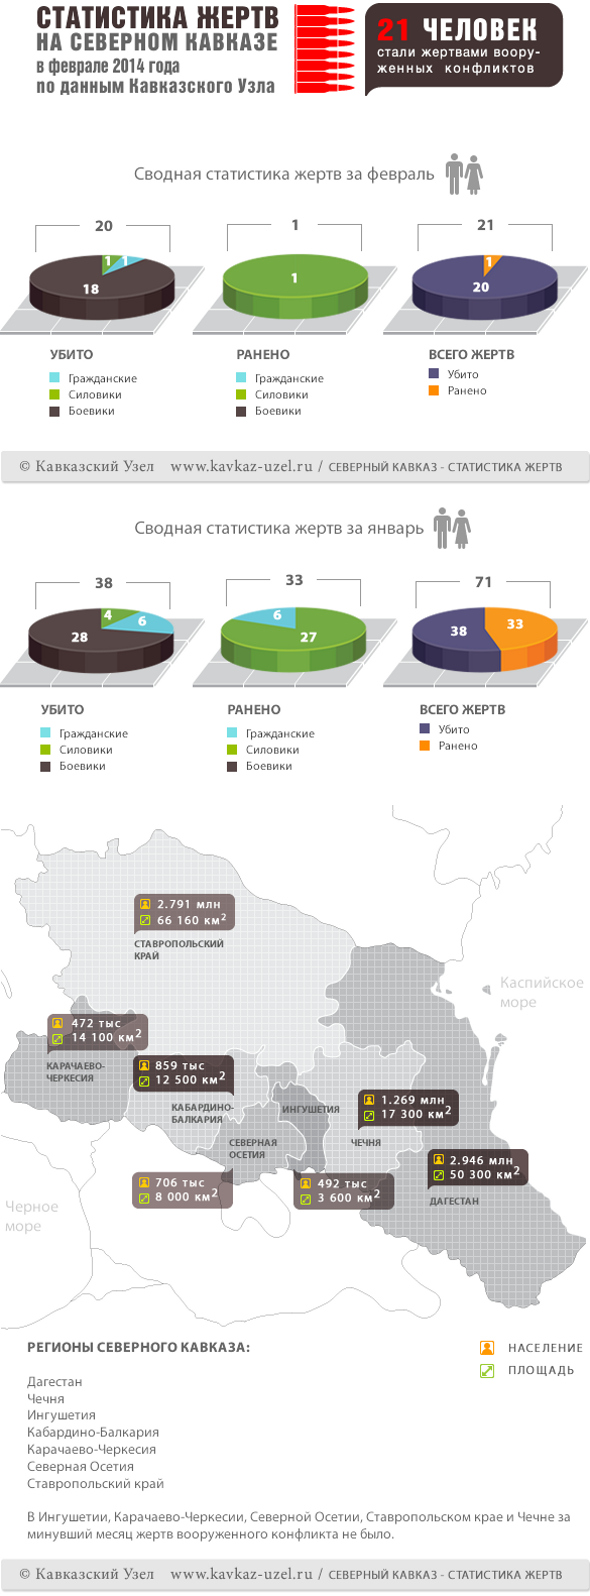 Инфографика. Статистика жертв на Северном Кавказе в феврале 2014 года по данным "Кавказского узла"